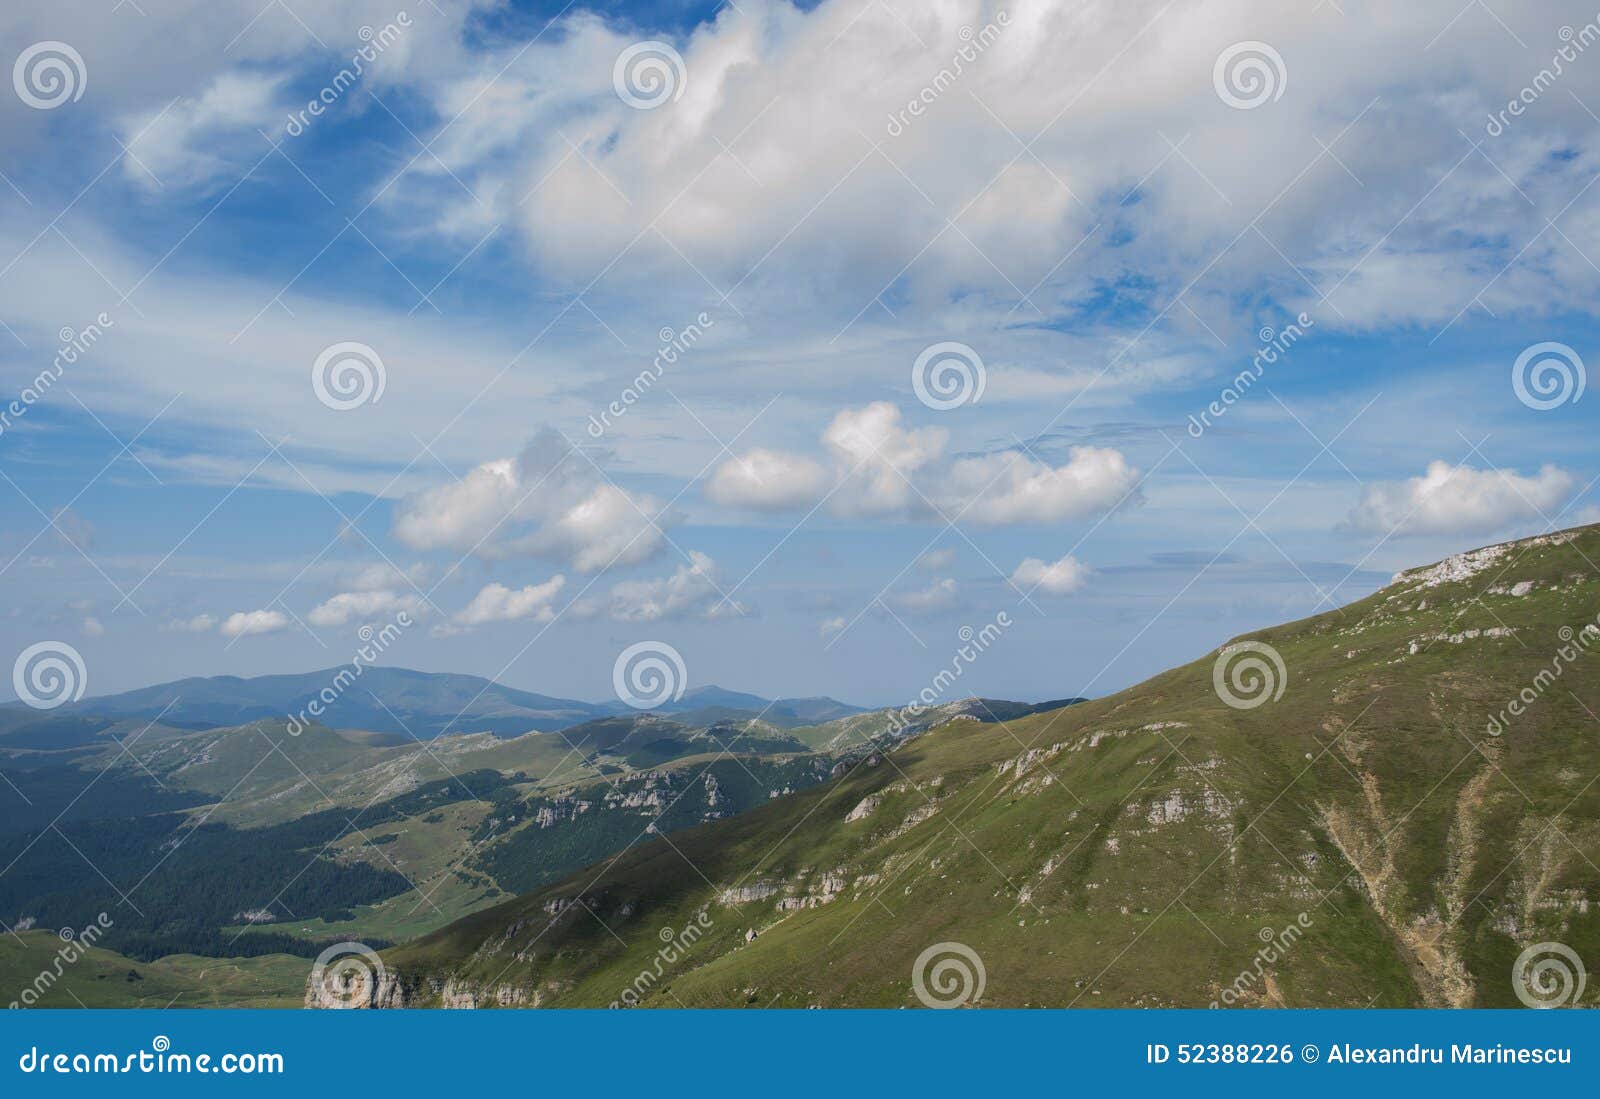 Румынские прикарпатские горы. Румынский прикарпатский Mountain View на летний день